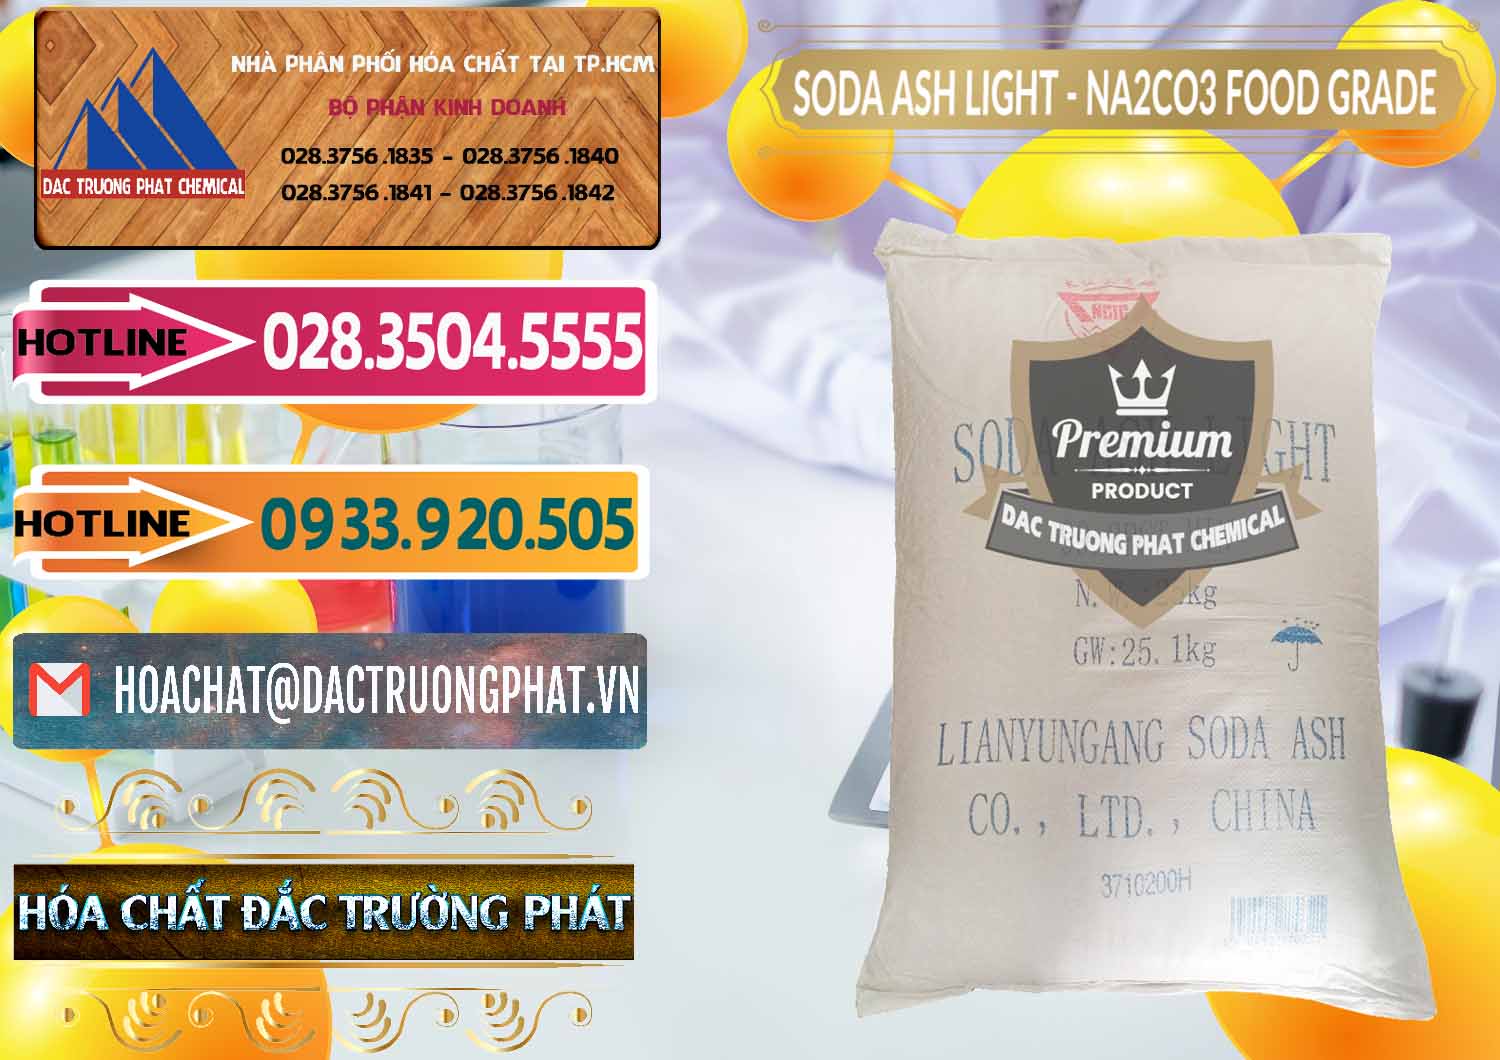 Chuyên bán _ phân phối Soda Ash Light – NA2CO3 Food Grade Trung Quốc China - 0127 - Đơn vị kinh doanh - cung cấp hóa chất tại TP.HCM - dactruongphat.vn